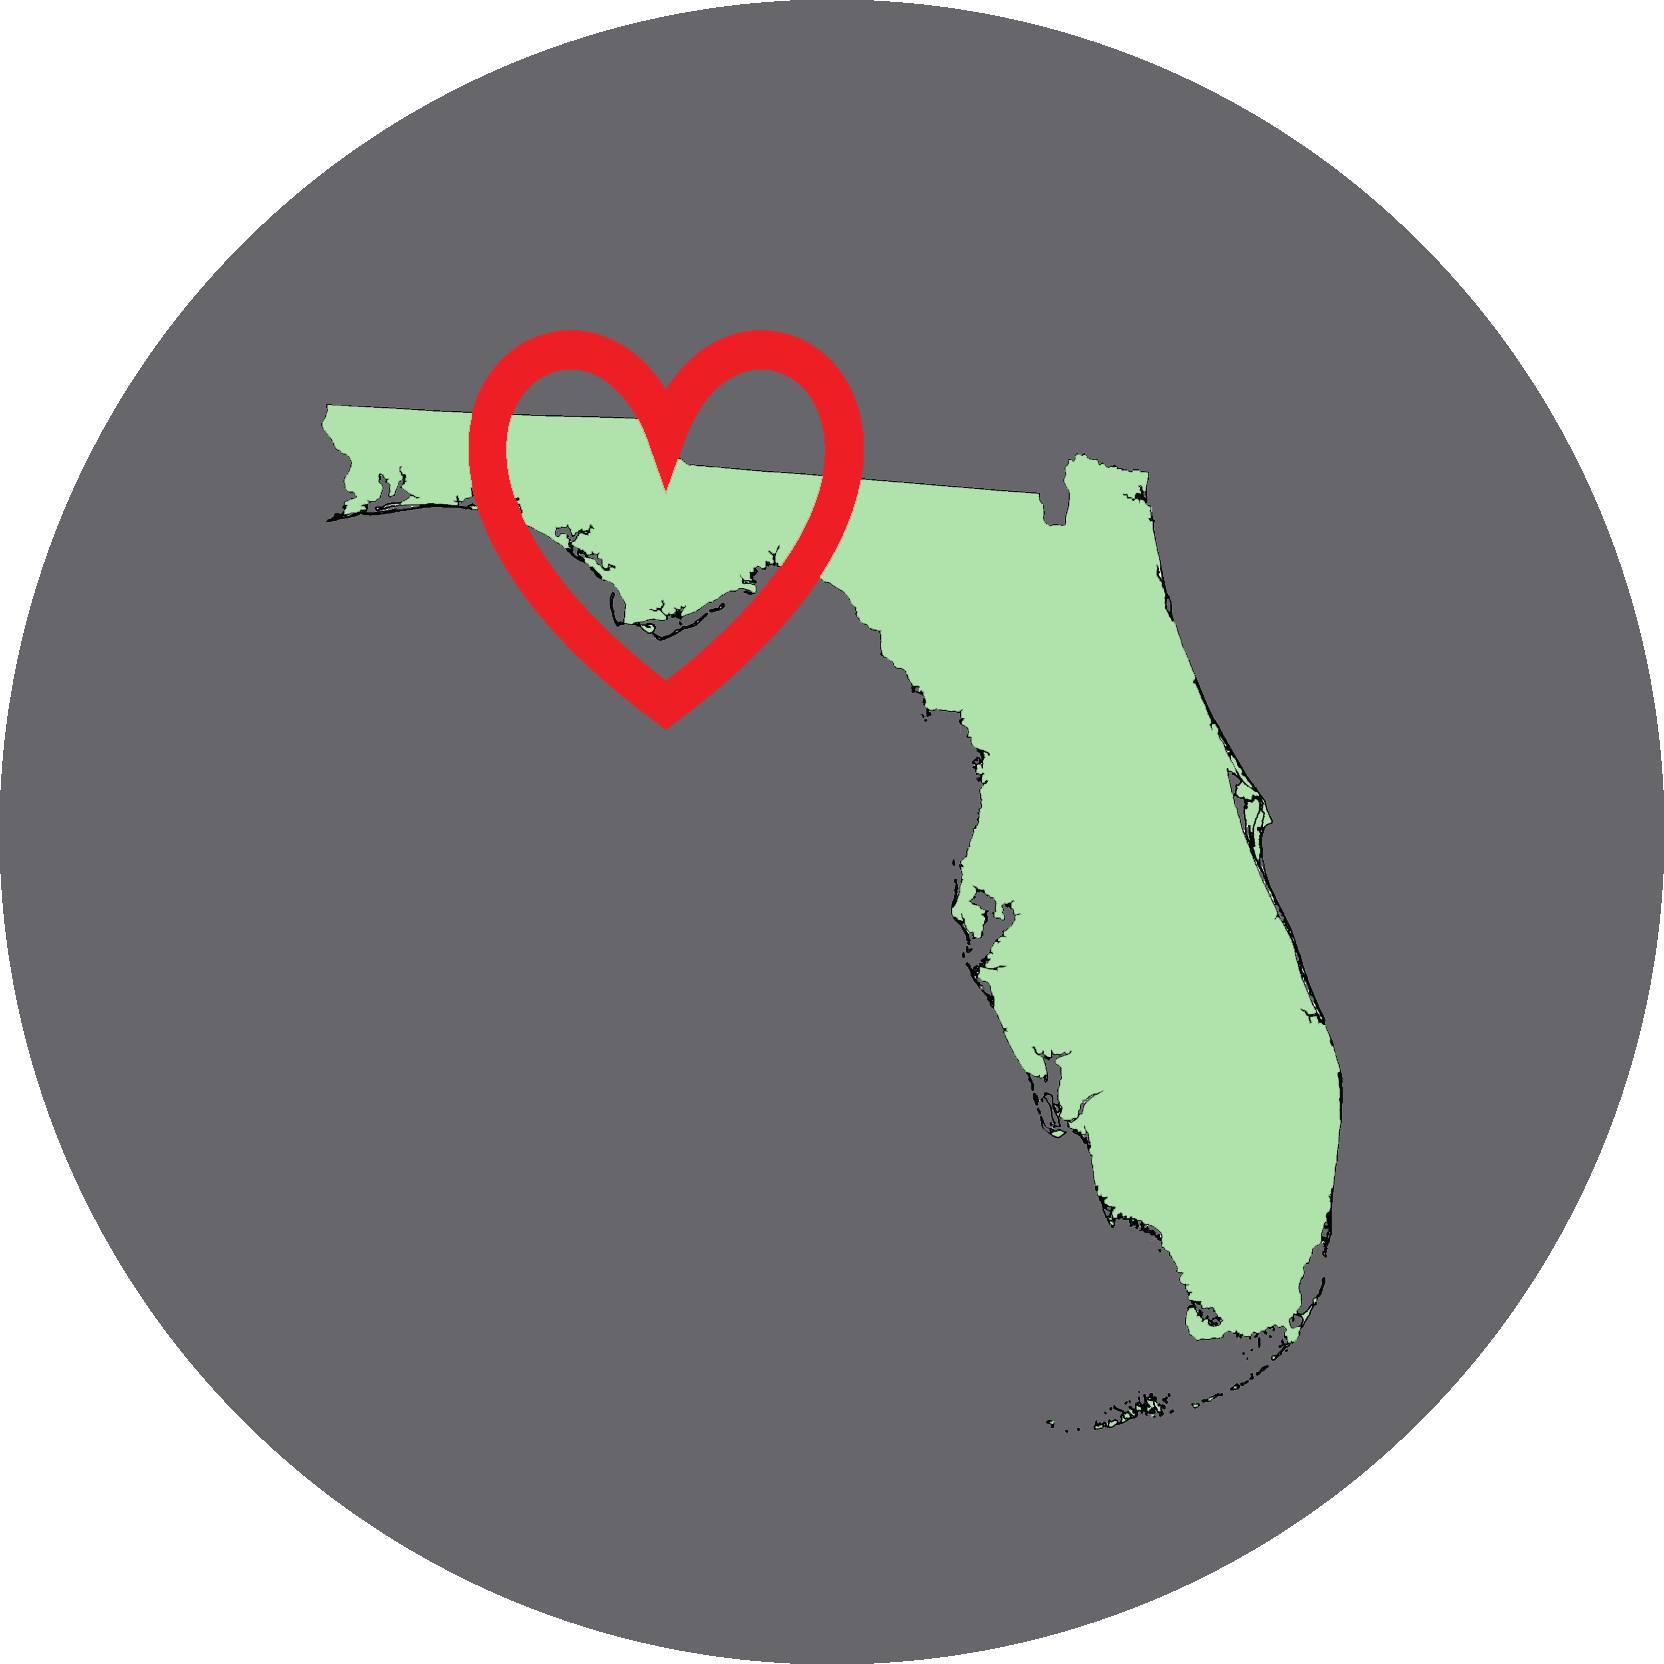 Florida Heart logo